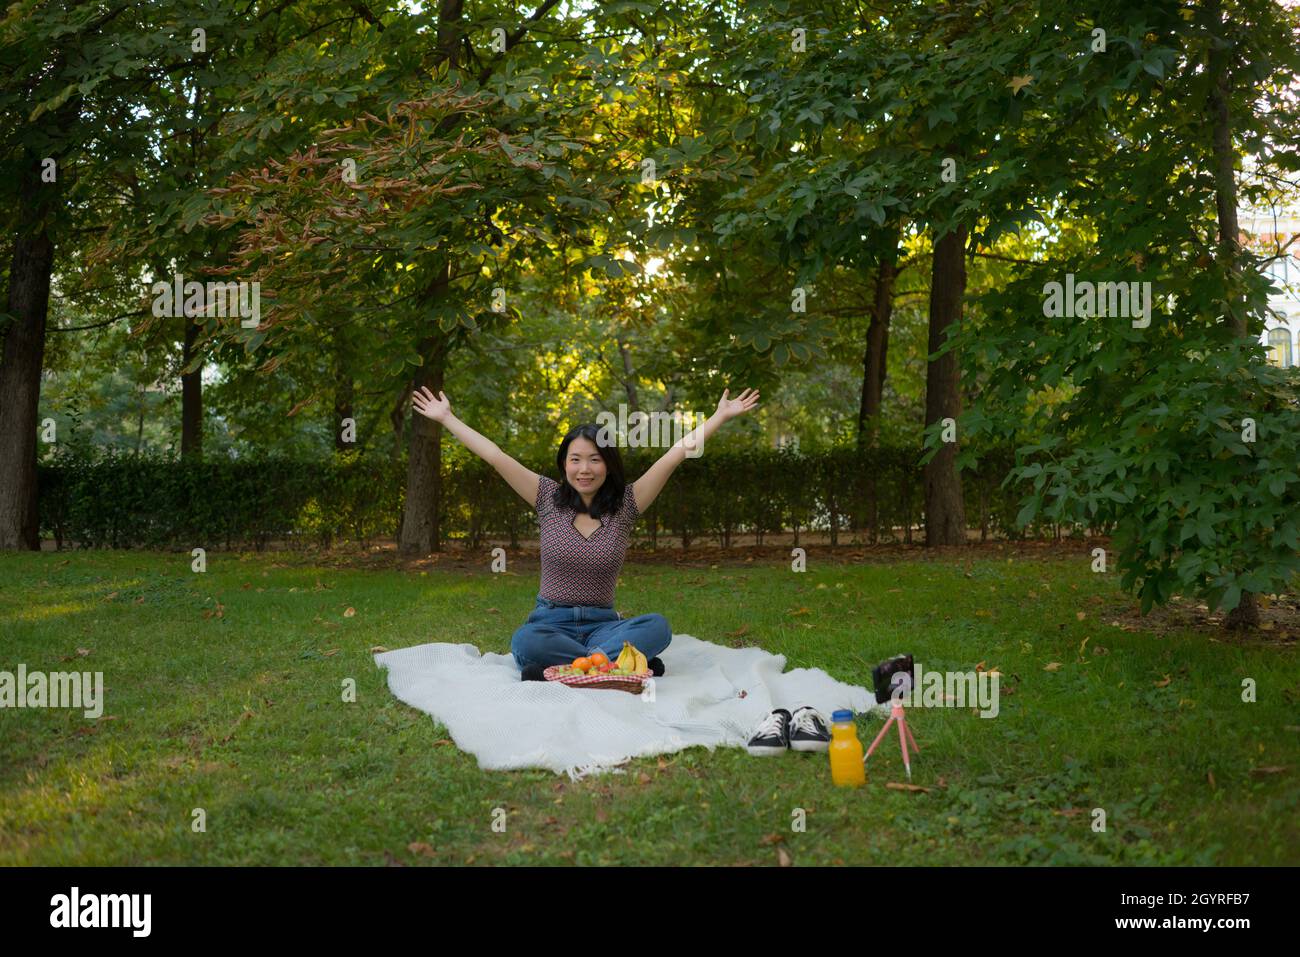 Herbstpicknick im Stadtpark - Lifestyle-Porträt einer jungen glücklichen und schönen asiatischen koreanischen Frau, die Gras mit Decke und Obstkorb sitzt und die r Stockfoto